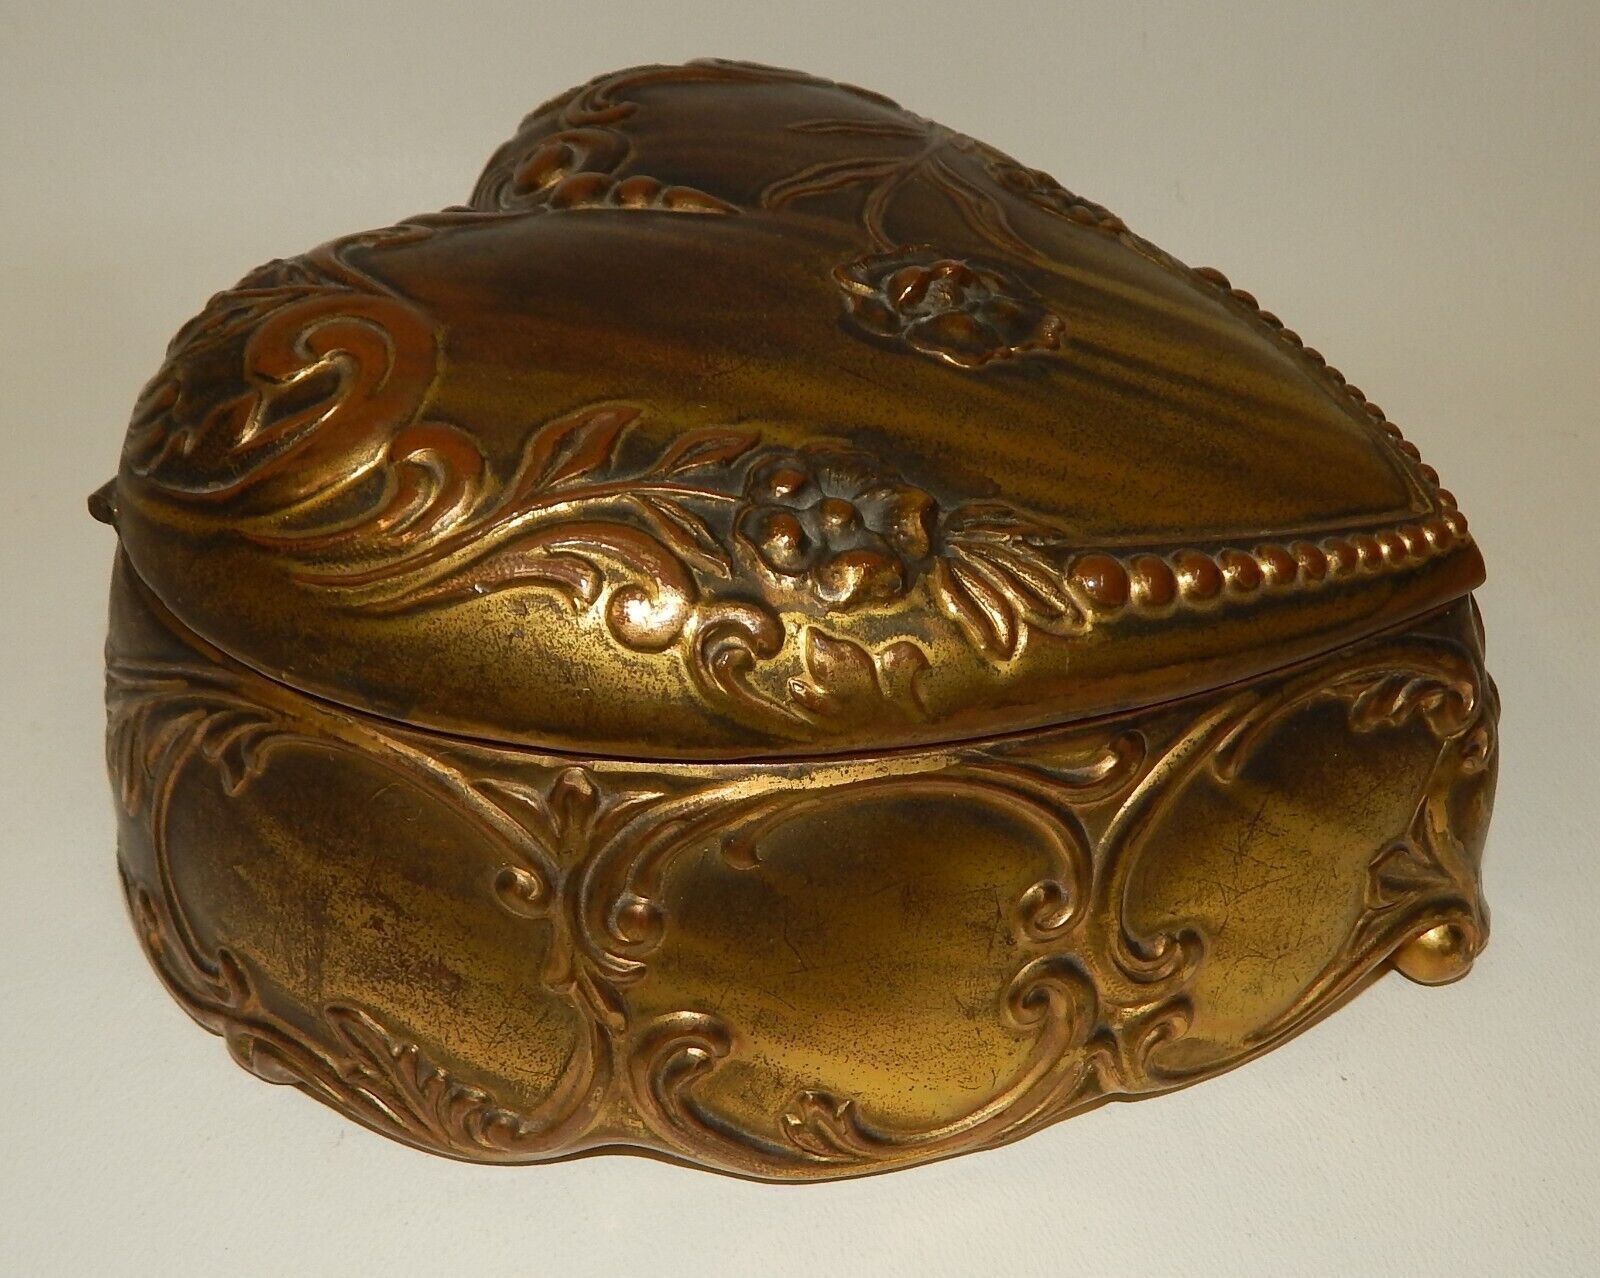 Antique Ornate Heart Shaped Art Nouveau Jewelry Casket